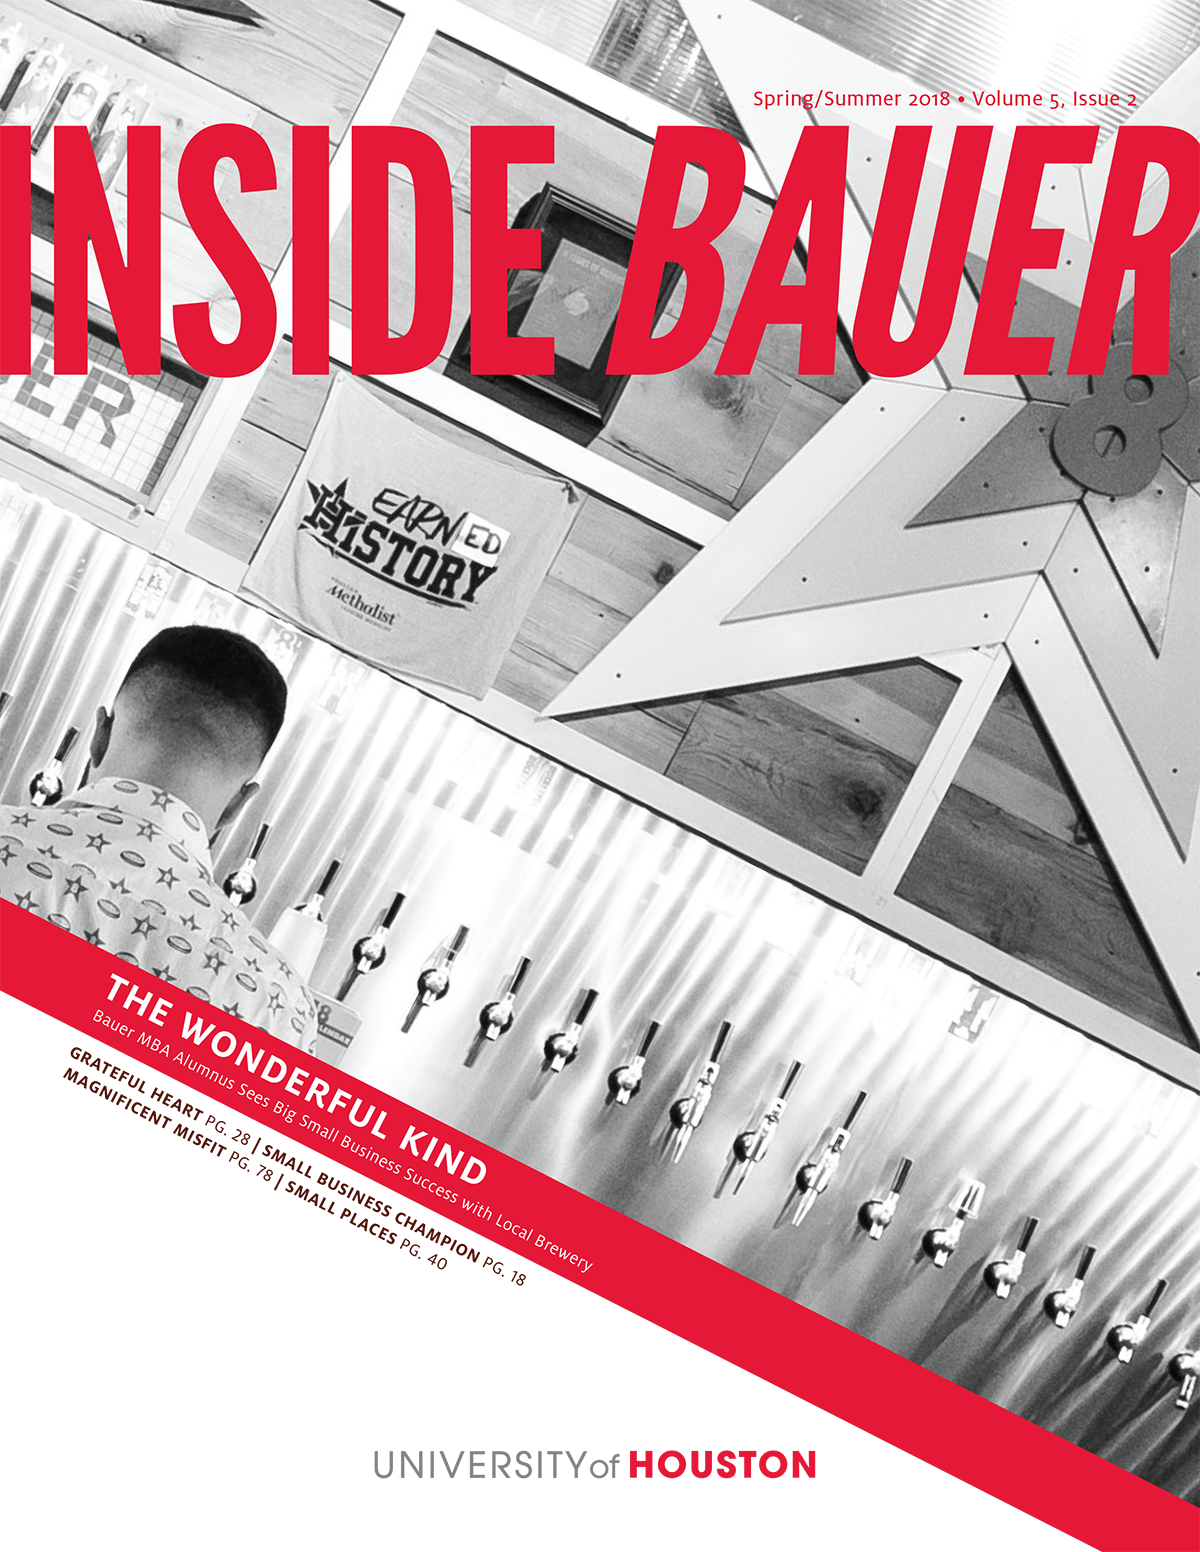 Inside Bauer Magazine: Spring/Summer 2018